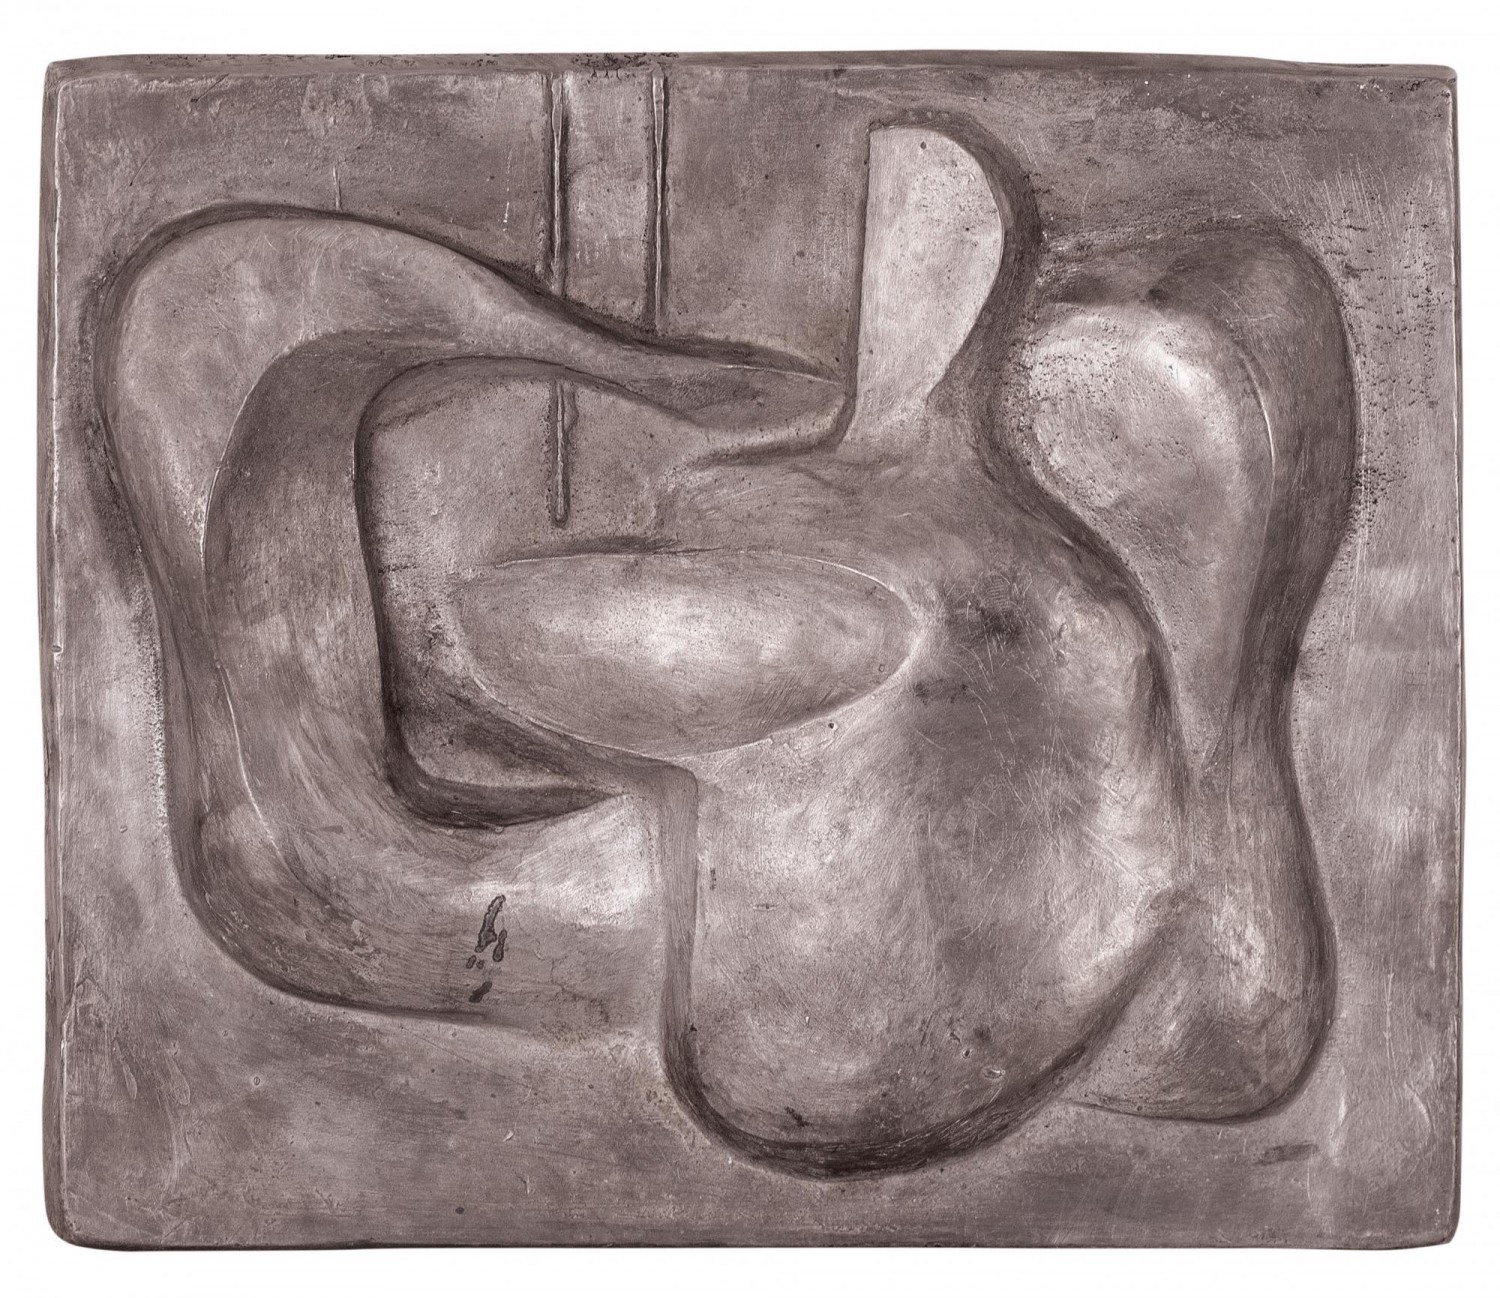 Hana Wichterlová: Hudební nástroje, 60. léta 20. století, cín, 26,5 cm x 31,5 cm, cena: 483 600 Kč, European Arts 21. 11. 2021